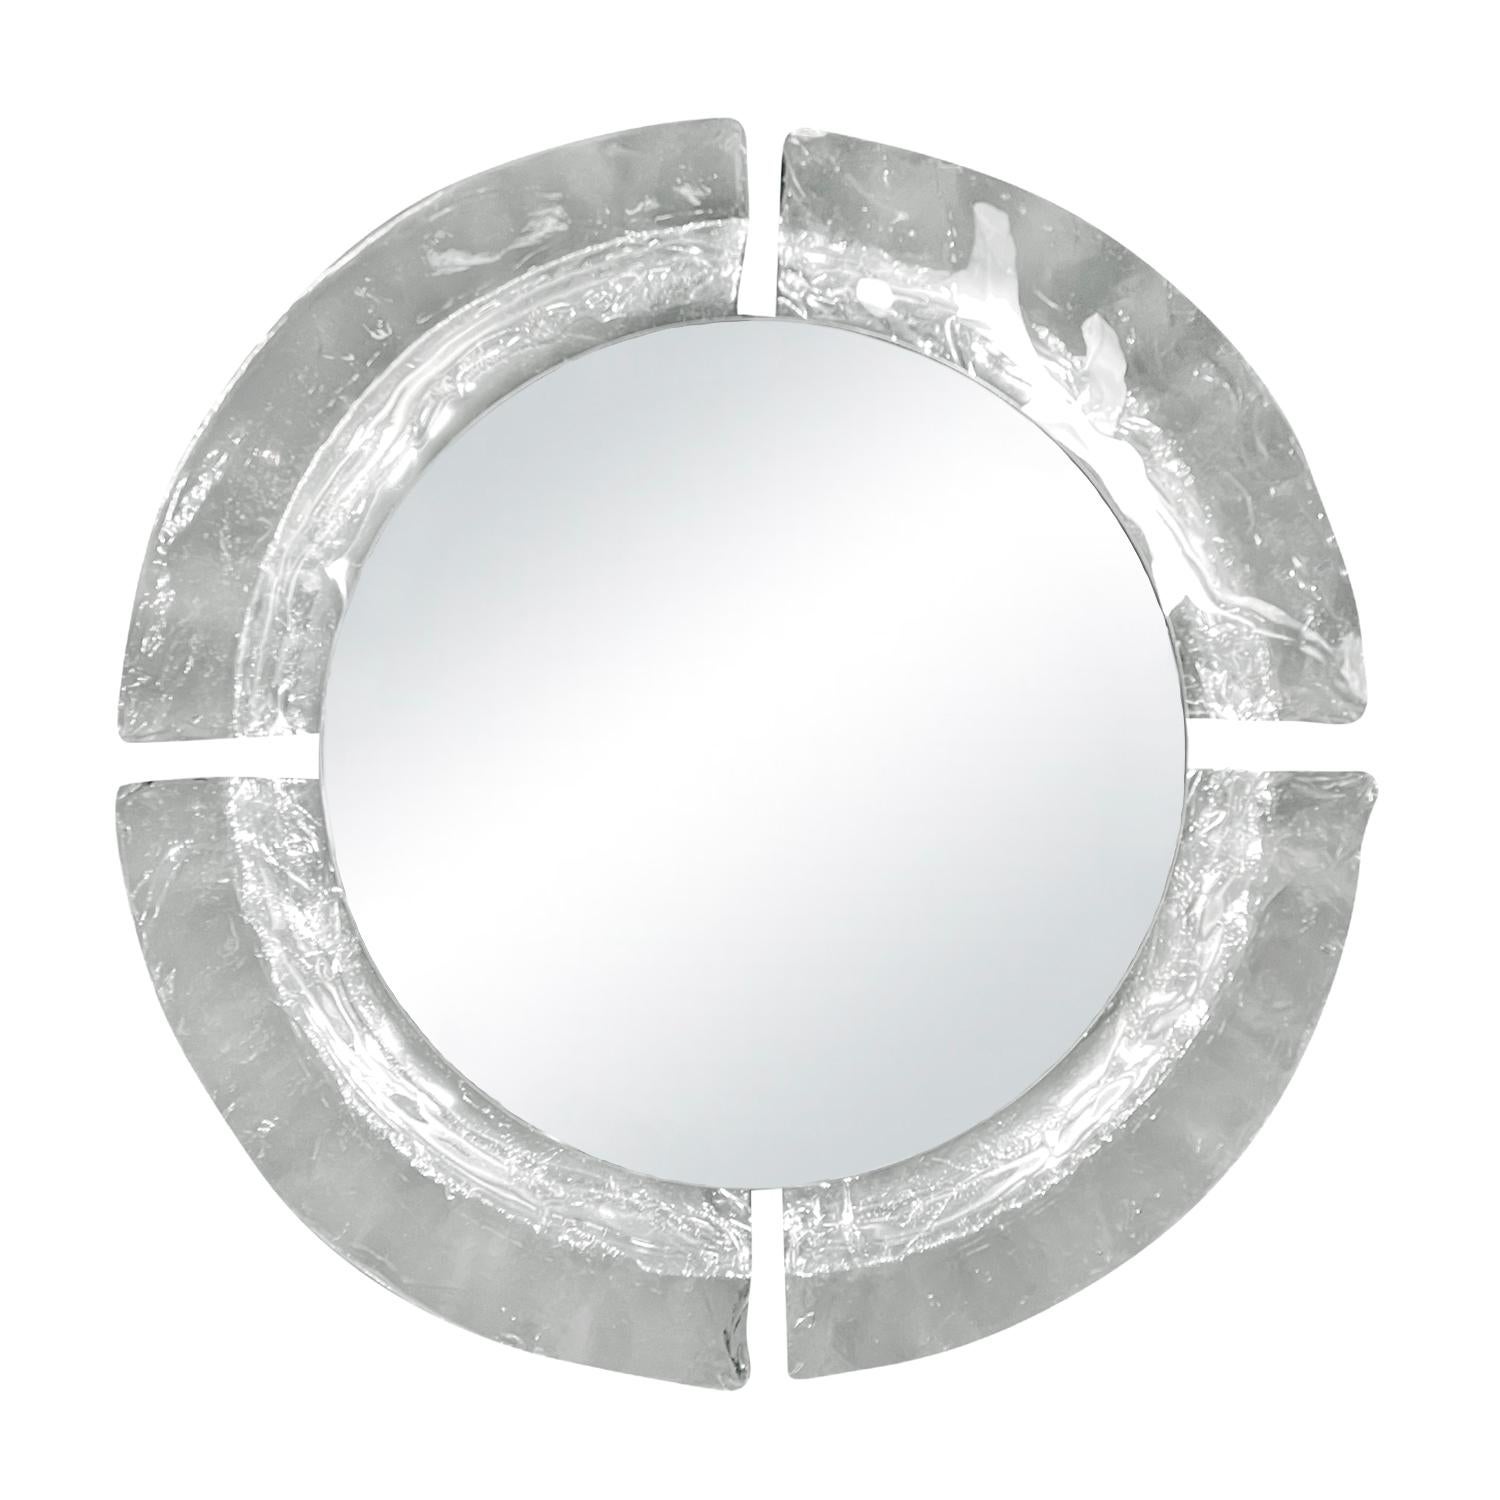 Ein dicker, runder, italienischer Mid-Century Modern Wandspiegel aus mundgeblasenem Muranoglas mit seinem originalen Spiegelglas, hergestellt von Mazzega in gutem Zustand. Der beleuchtete Wandspiegel ist mit vier Lichtfassungen auf der Rückseite